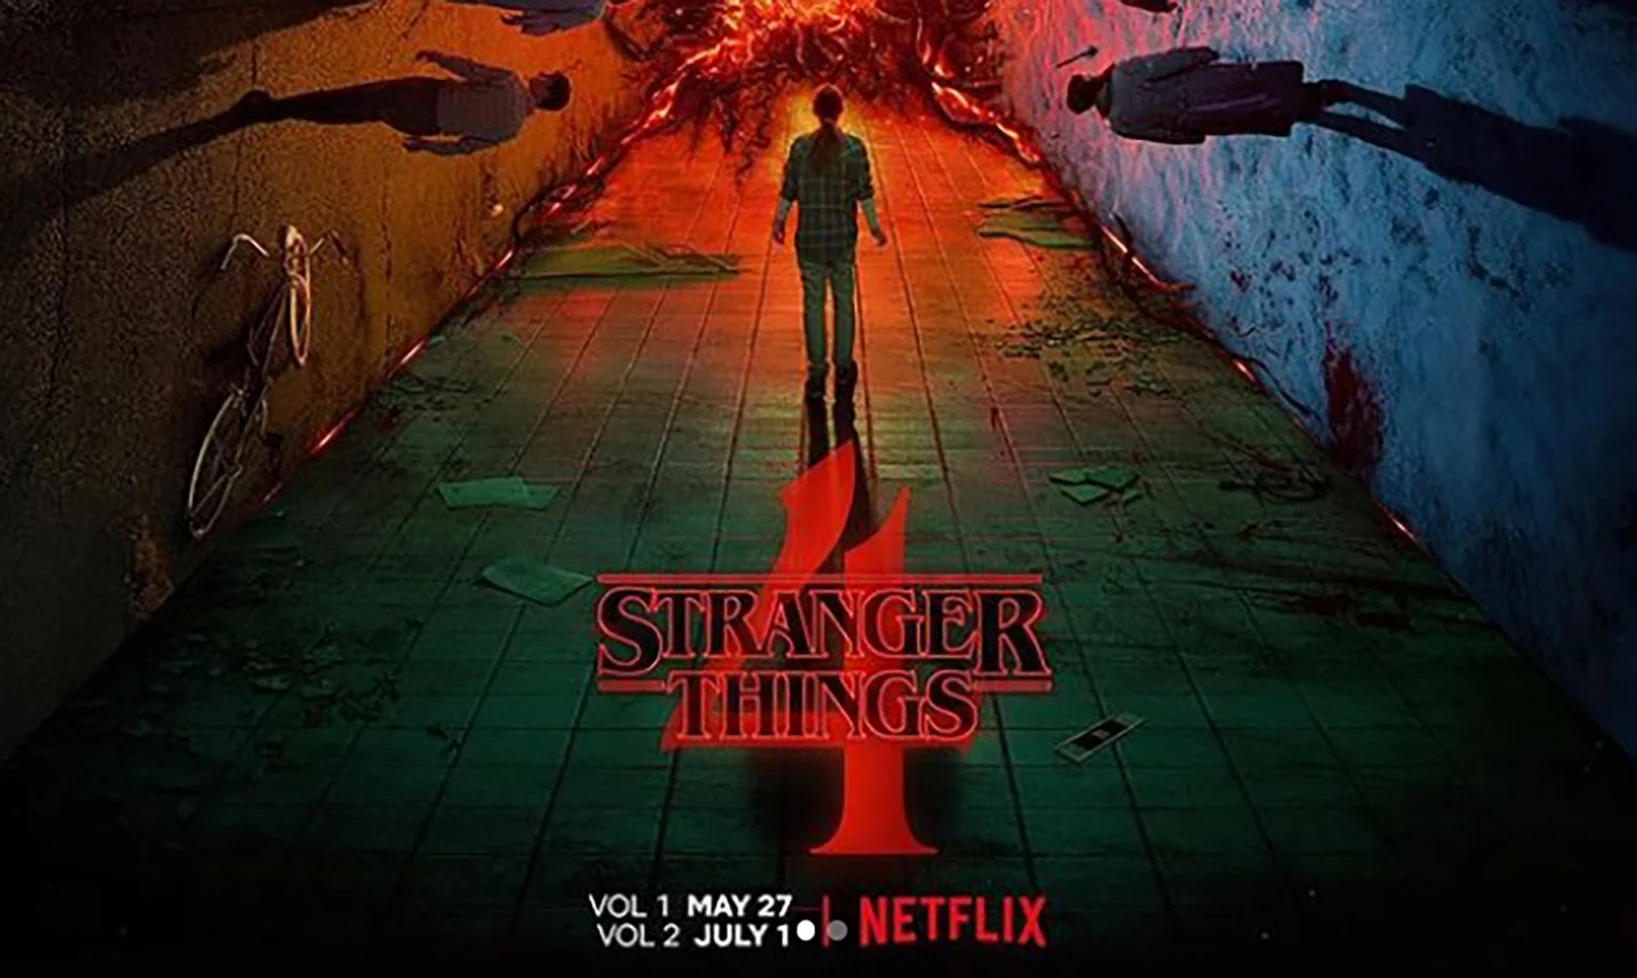 Stranger Things Season 4 Vol. 1 Episode 2 review: Vecna's curse